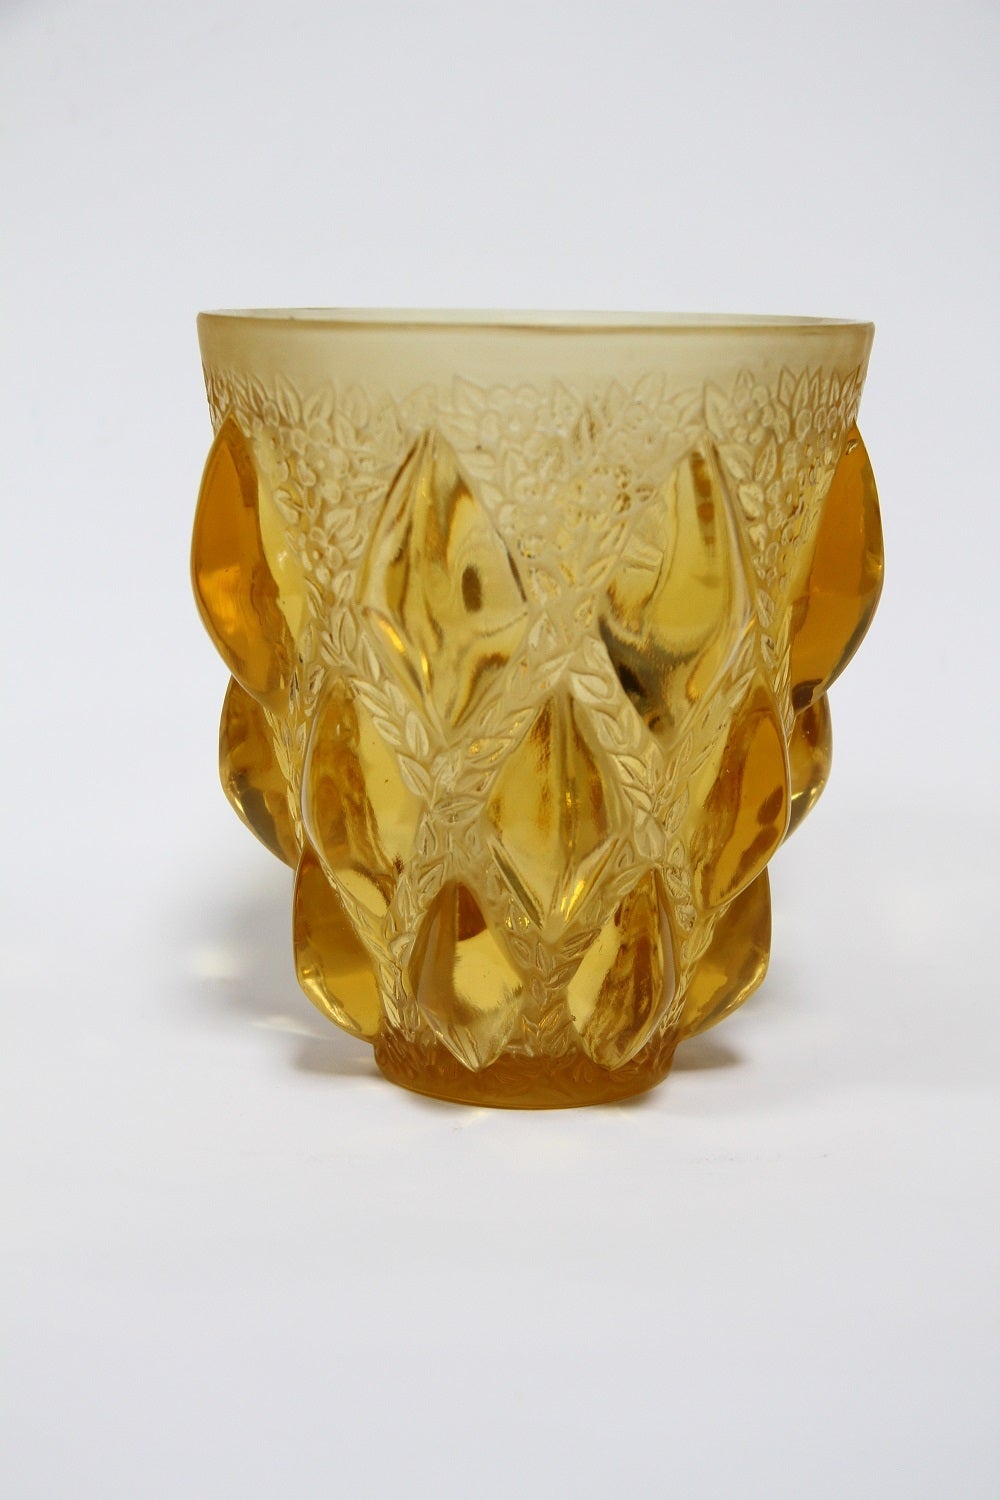 Rene Lalique Rampillon yellow color glass vase.
dit aussi vase - Cabochons et fleurettes 
modele cree le 8 mars 1927
verre blanc moule-presse opalescent et couleur (fume et jaune)
haut. 12.7 cm
figure aux catalogues de 1928 et de 1932
suprrime